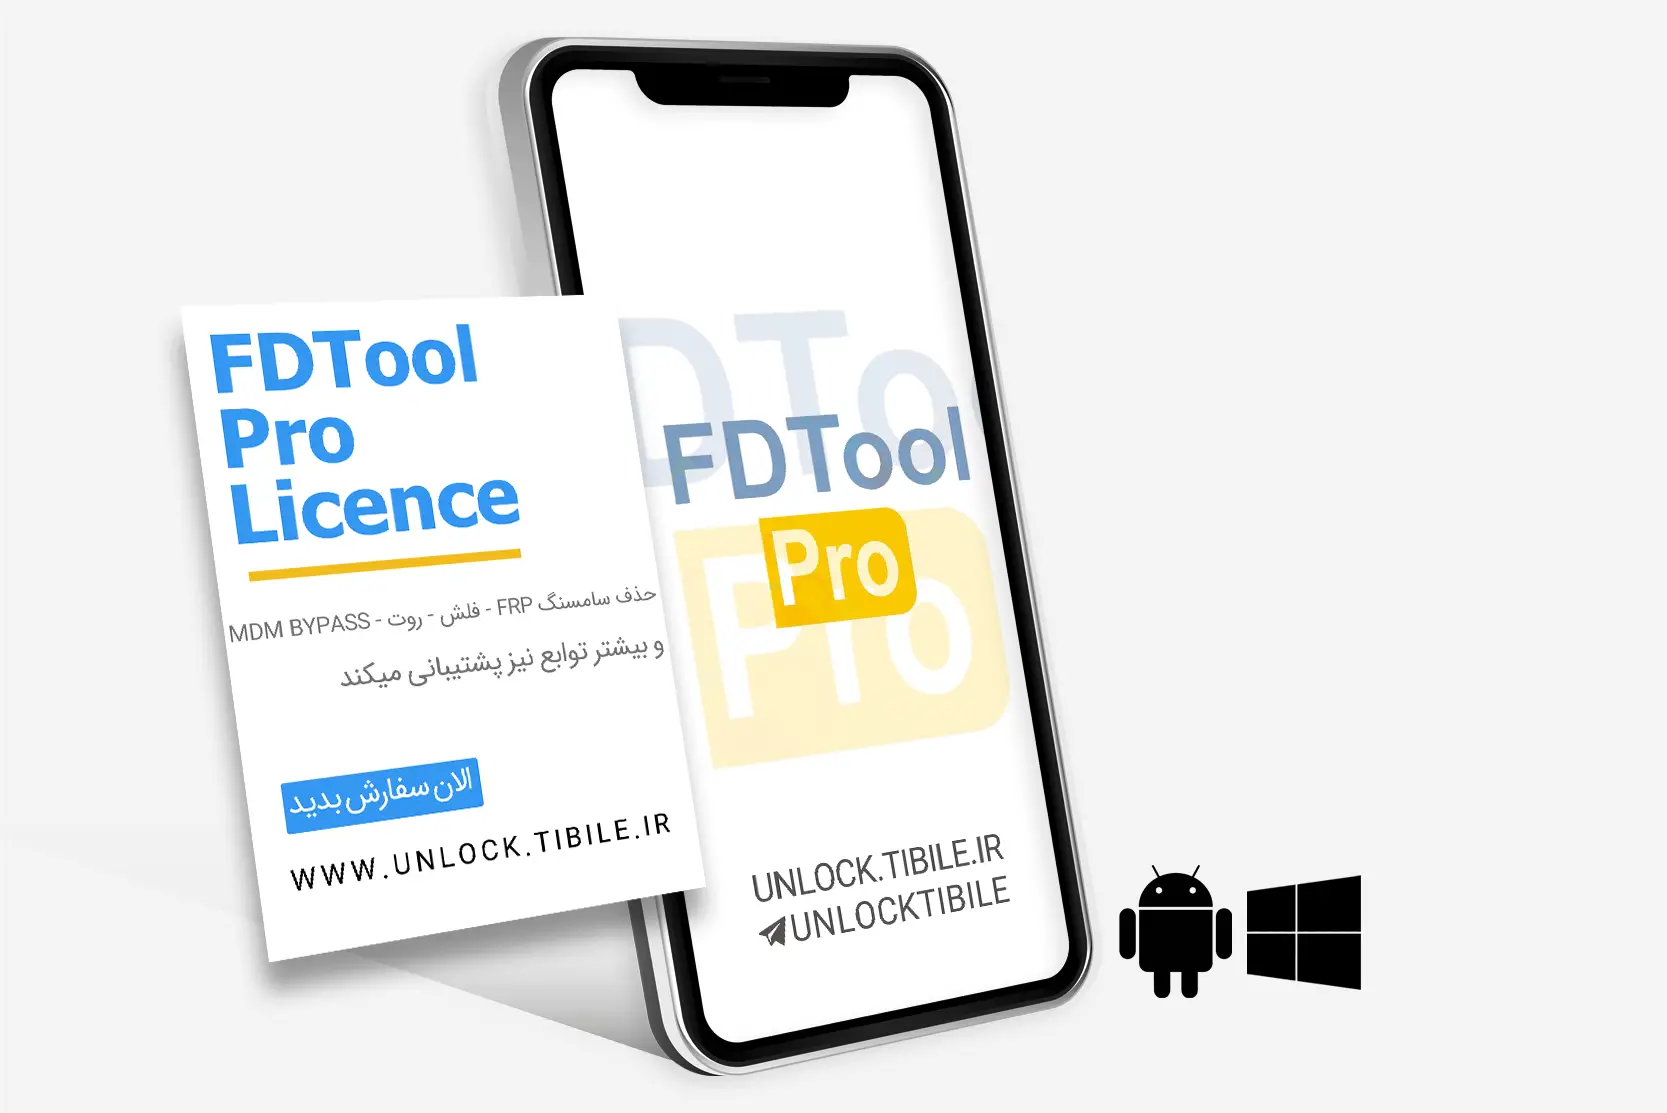 FDTool Pro